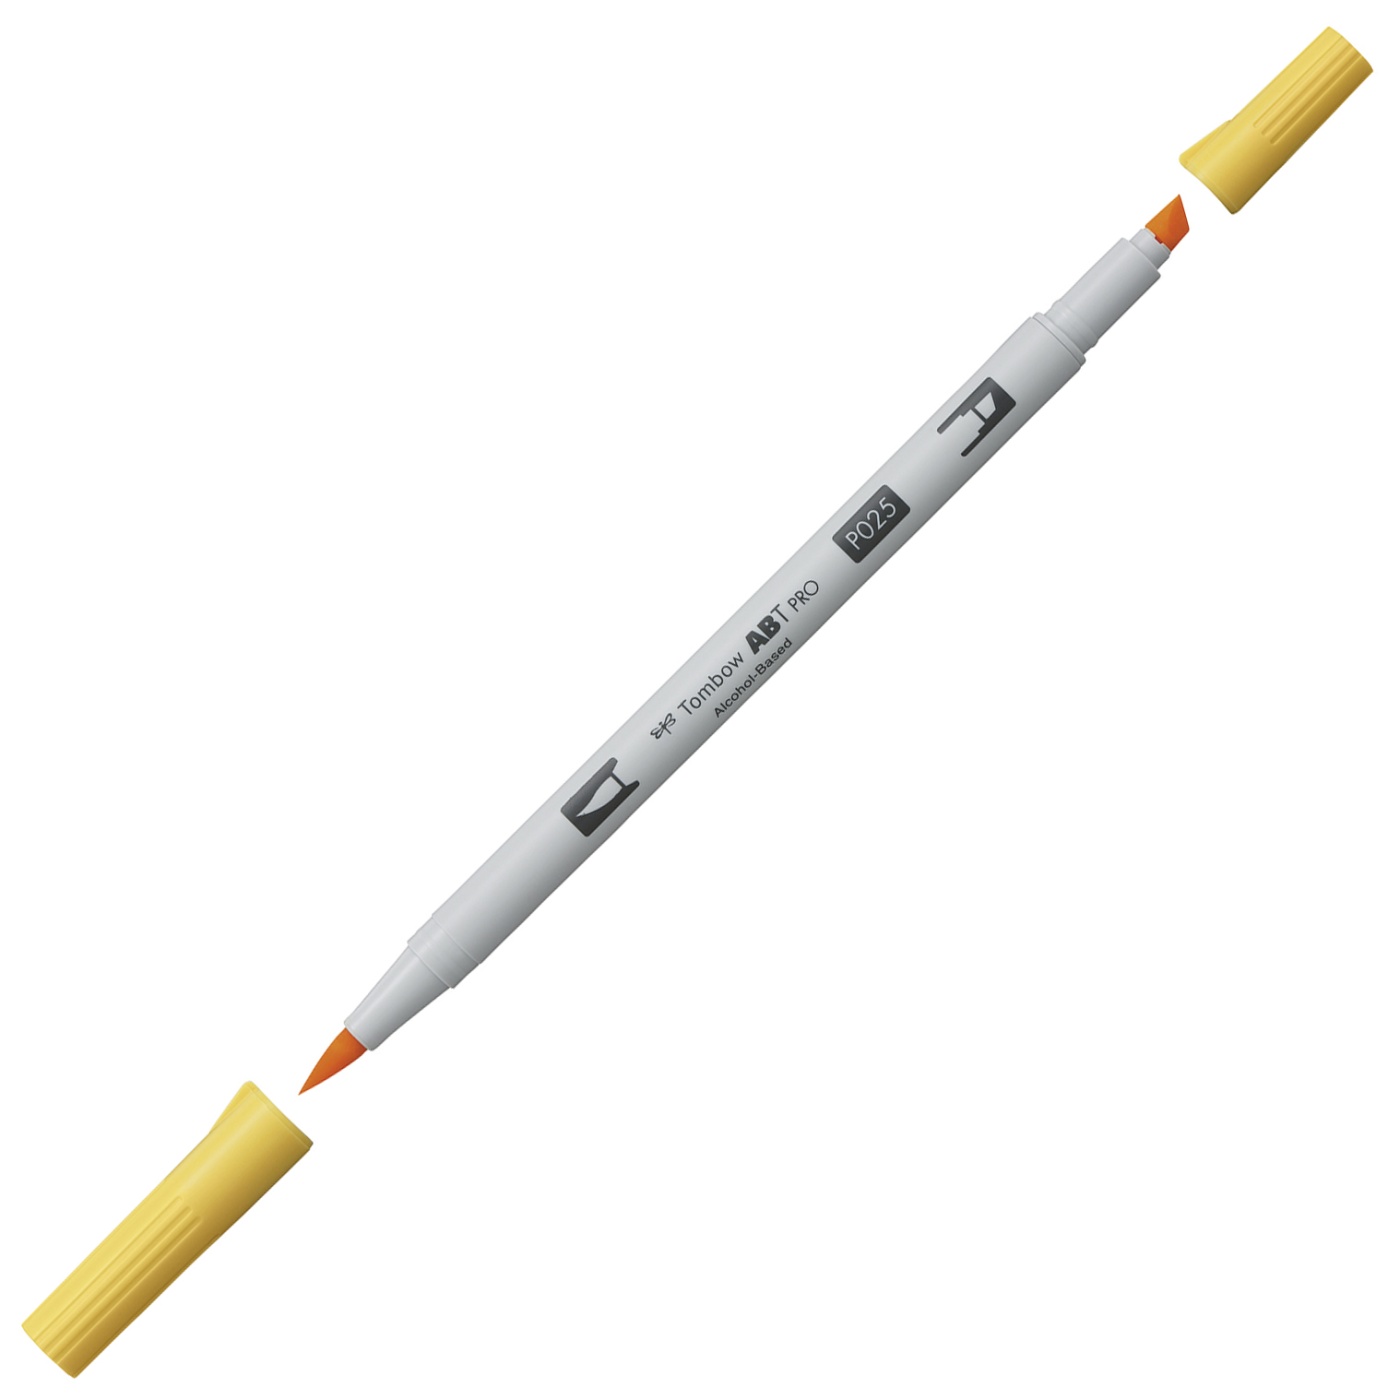 ABT PRO Dual Brush Pen 5-setti Lämmin Harmaa ryhmässä Kynät / Taiteilijakynät / Sivellinkynät @ Pen Store (101258)